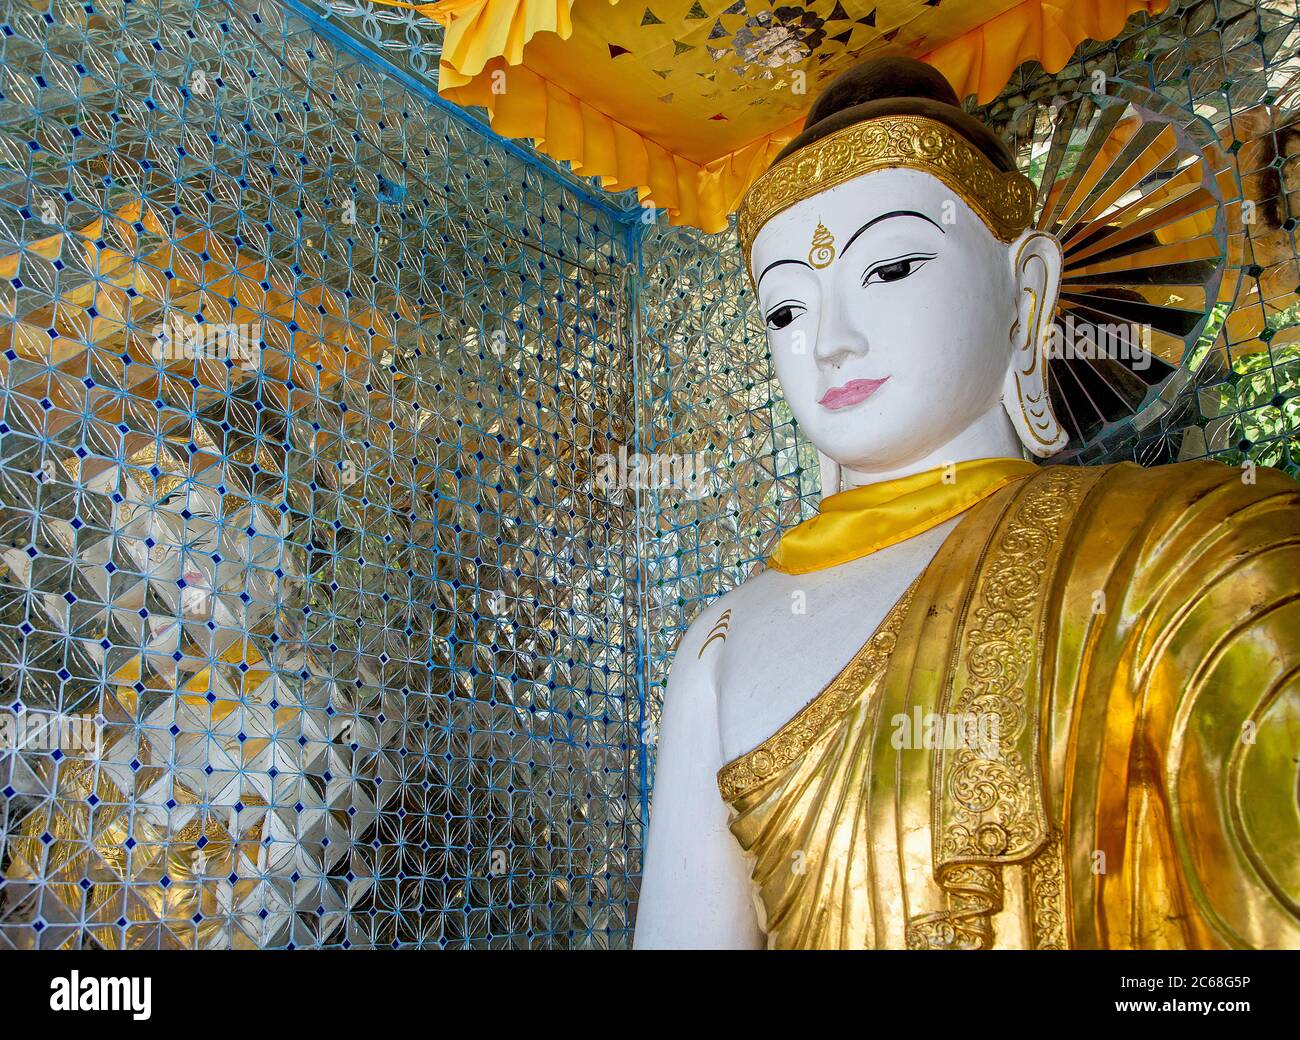 Buddha Statue in the Shwedagon Pagoda, Yangon, Myanmar Stock Photo